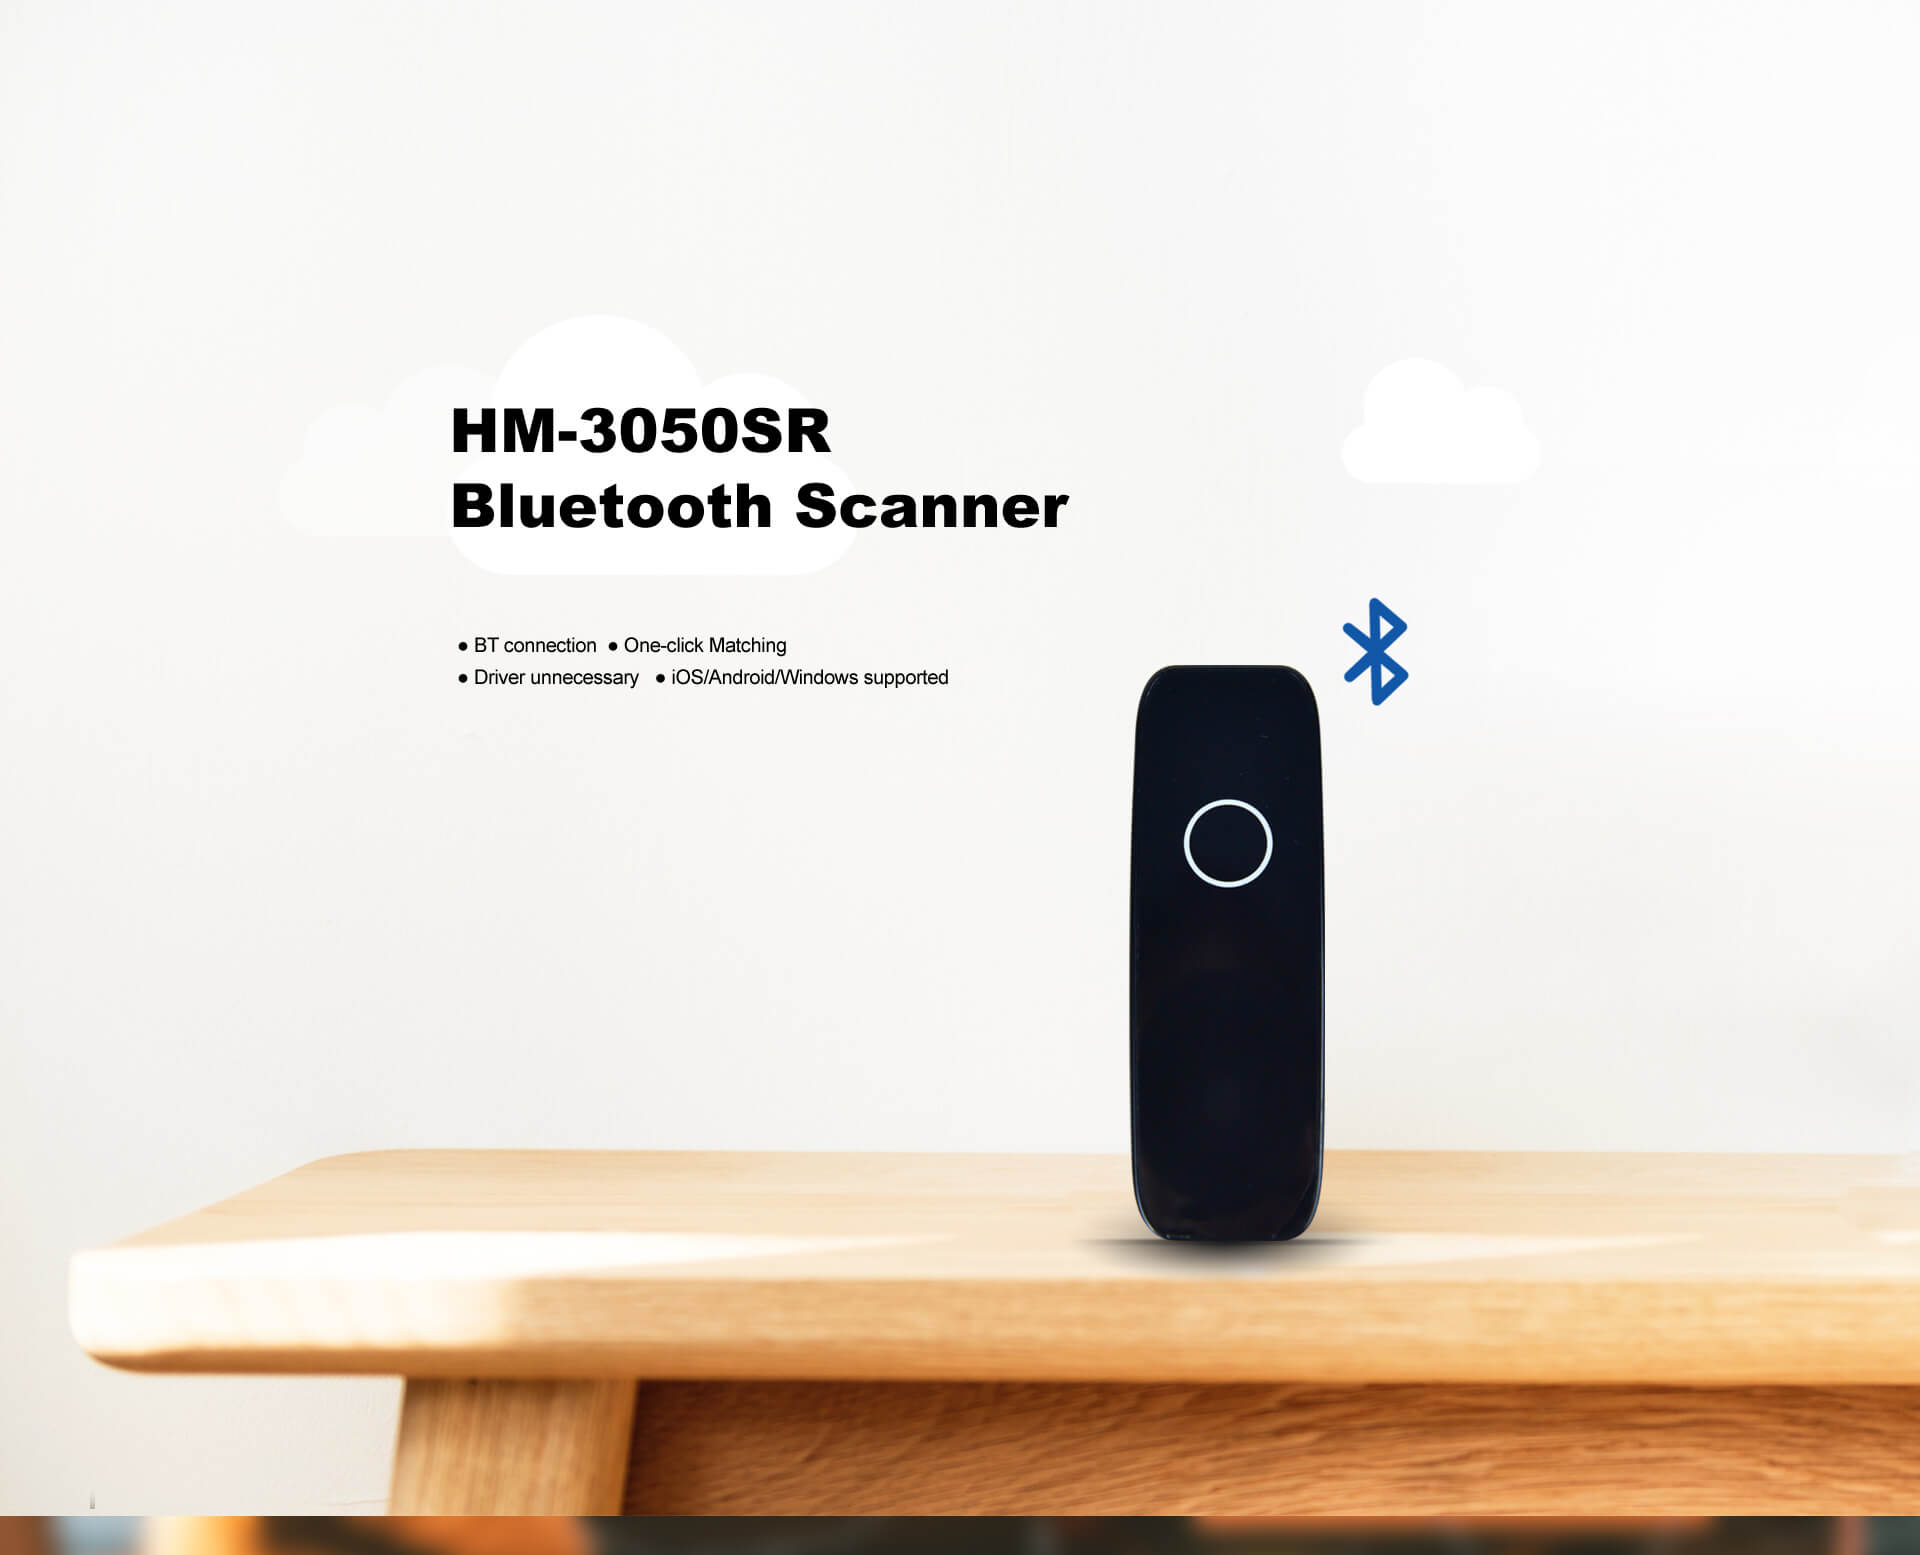 iDPRT Bluetooth Barcode Scanner HM-3050SR (1)